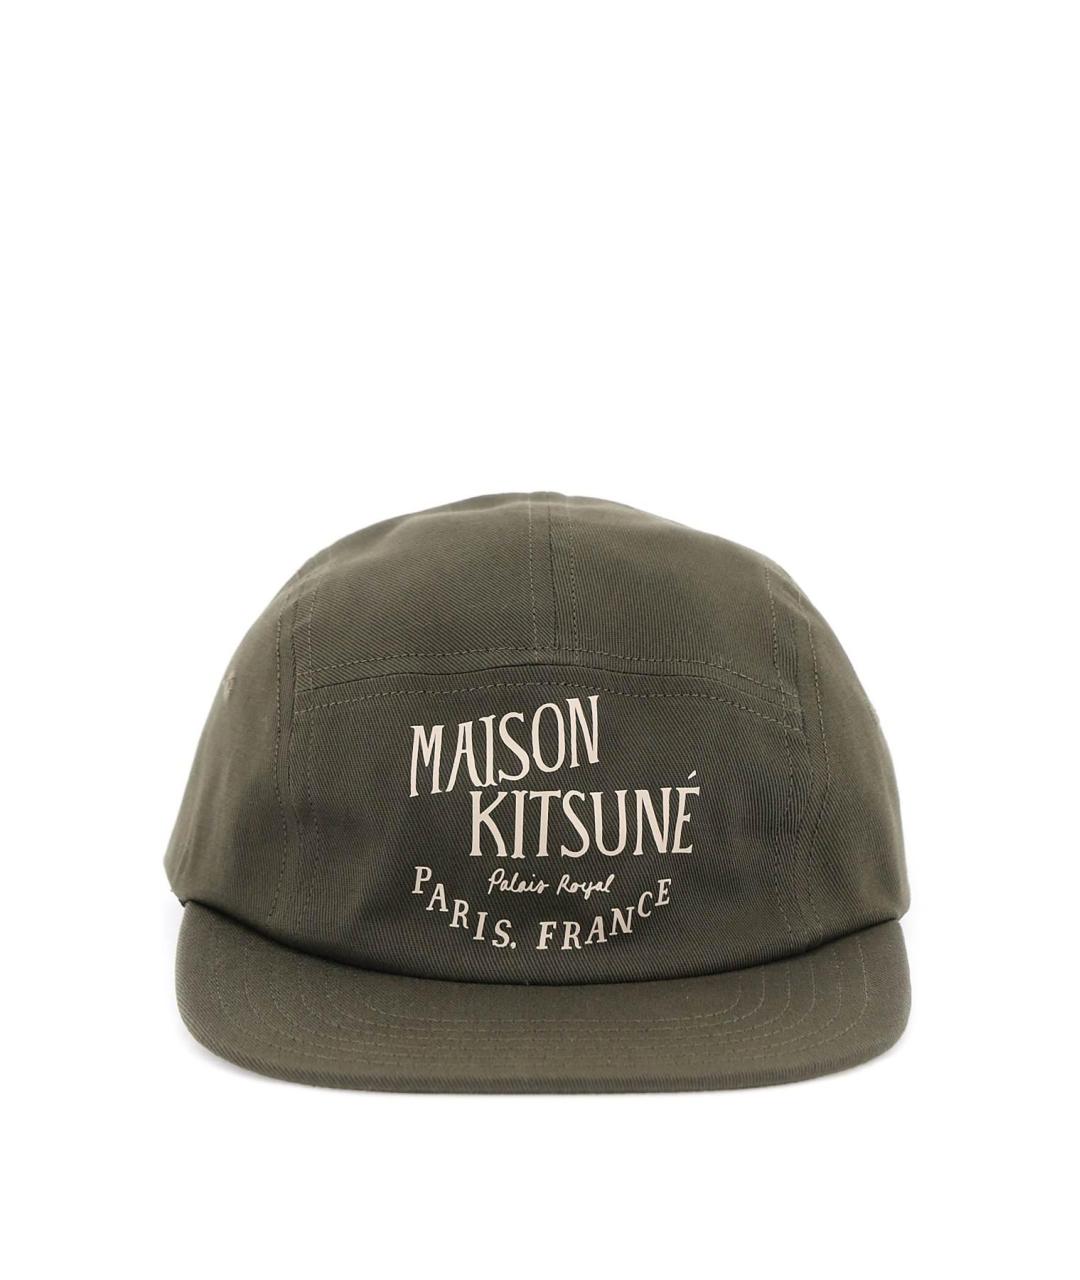 MAISON KITSUNE Хаки хлопковая кепка/бейсболка, фото 2